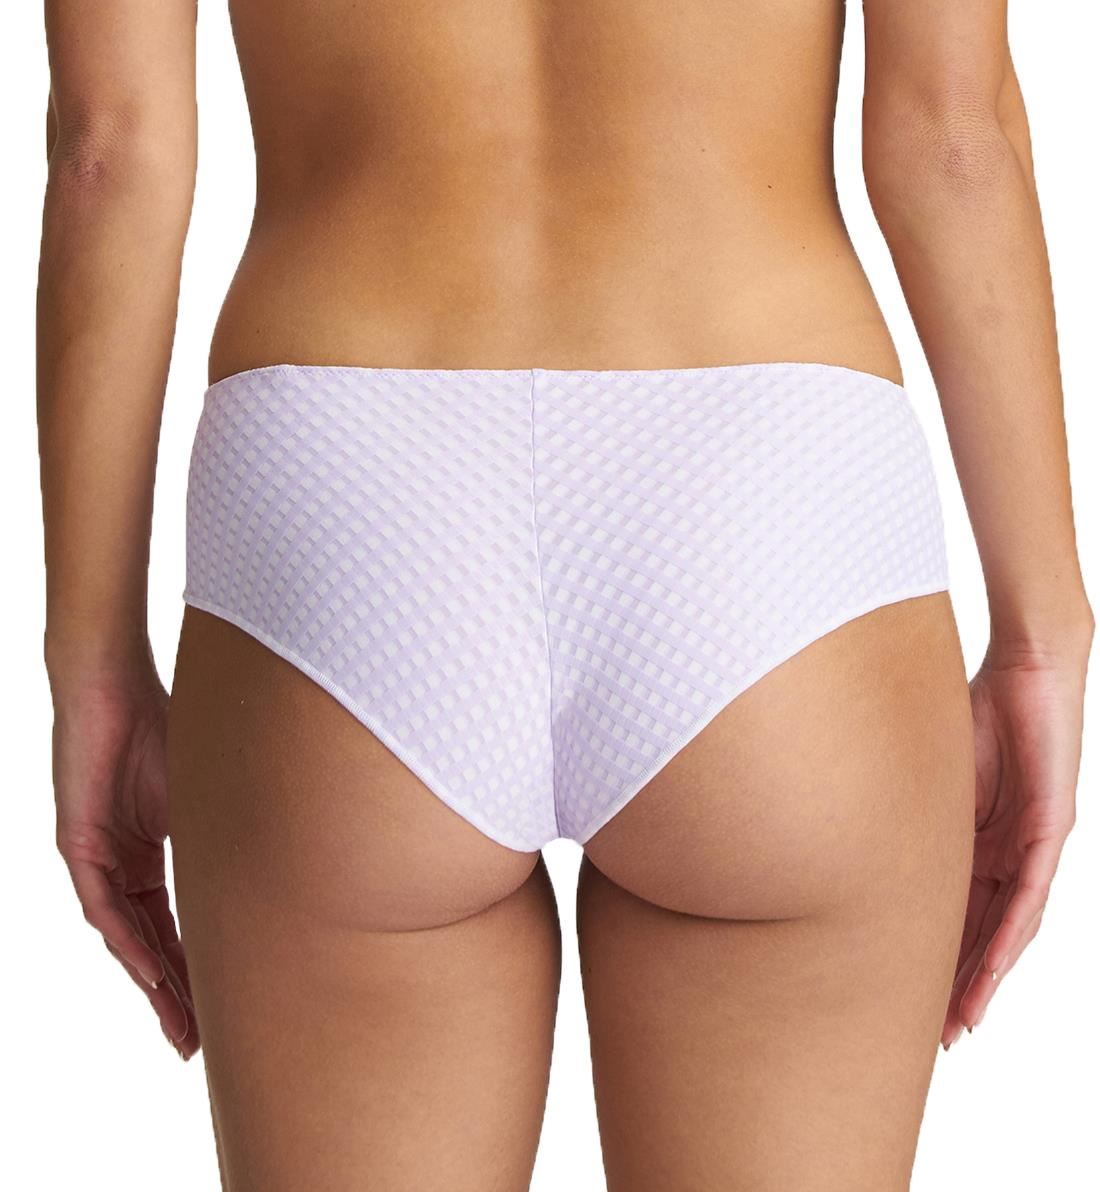 Marie Jo Avero Matching Hotpants Panty (0500415),XS,Tiny Iris - Tiny Iris,XS